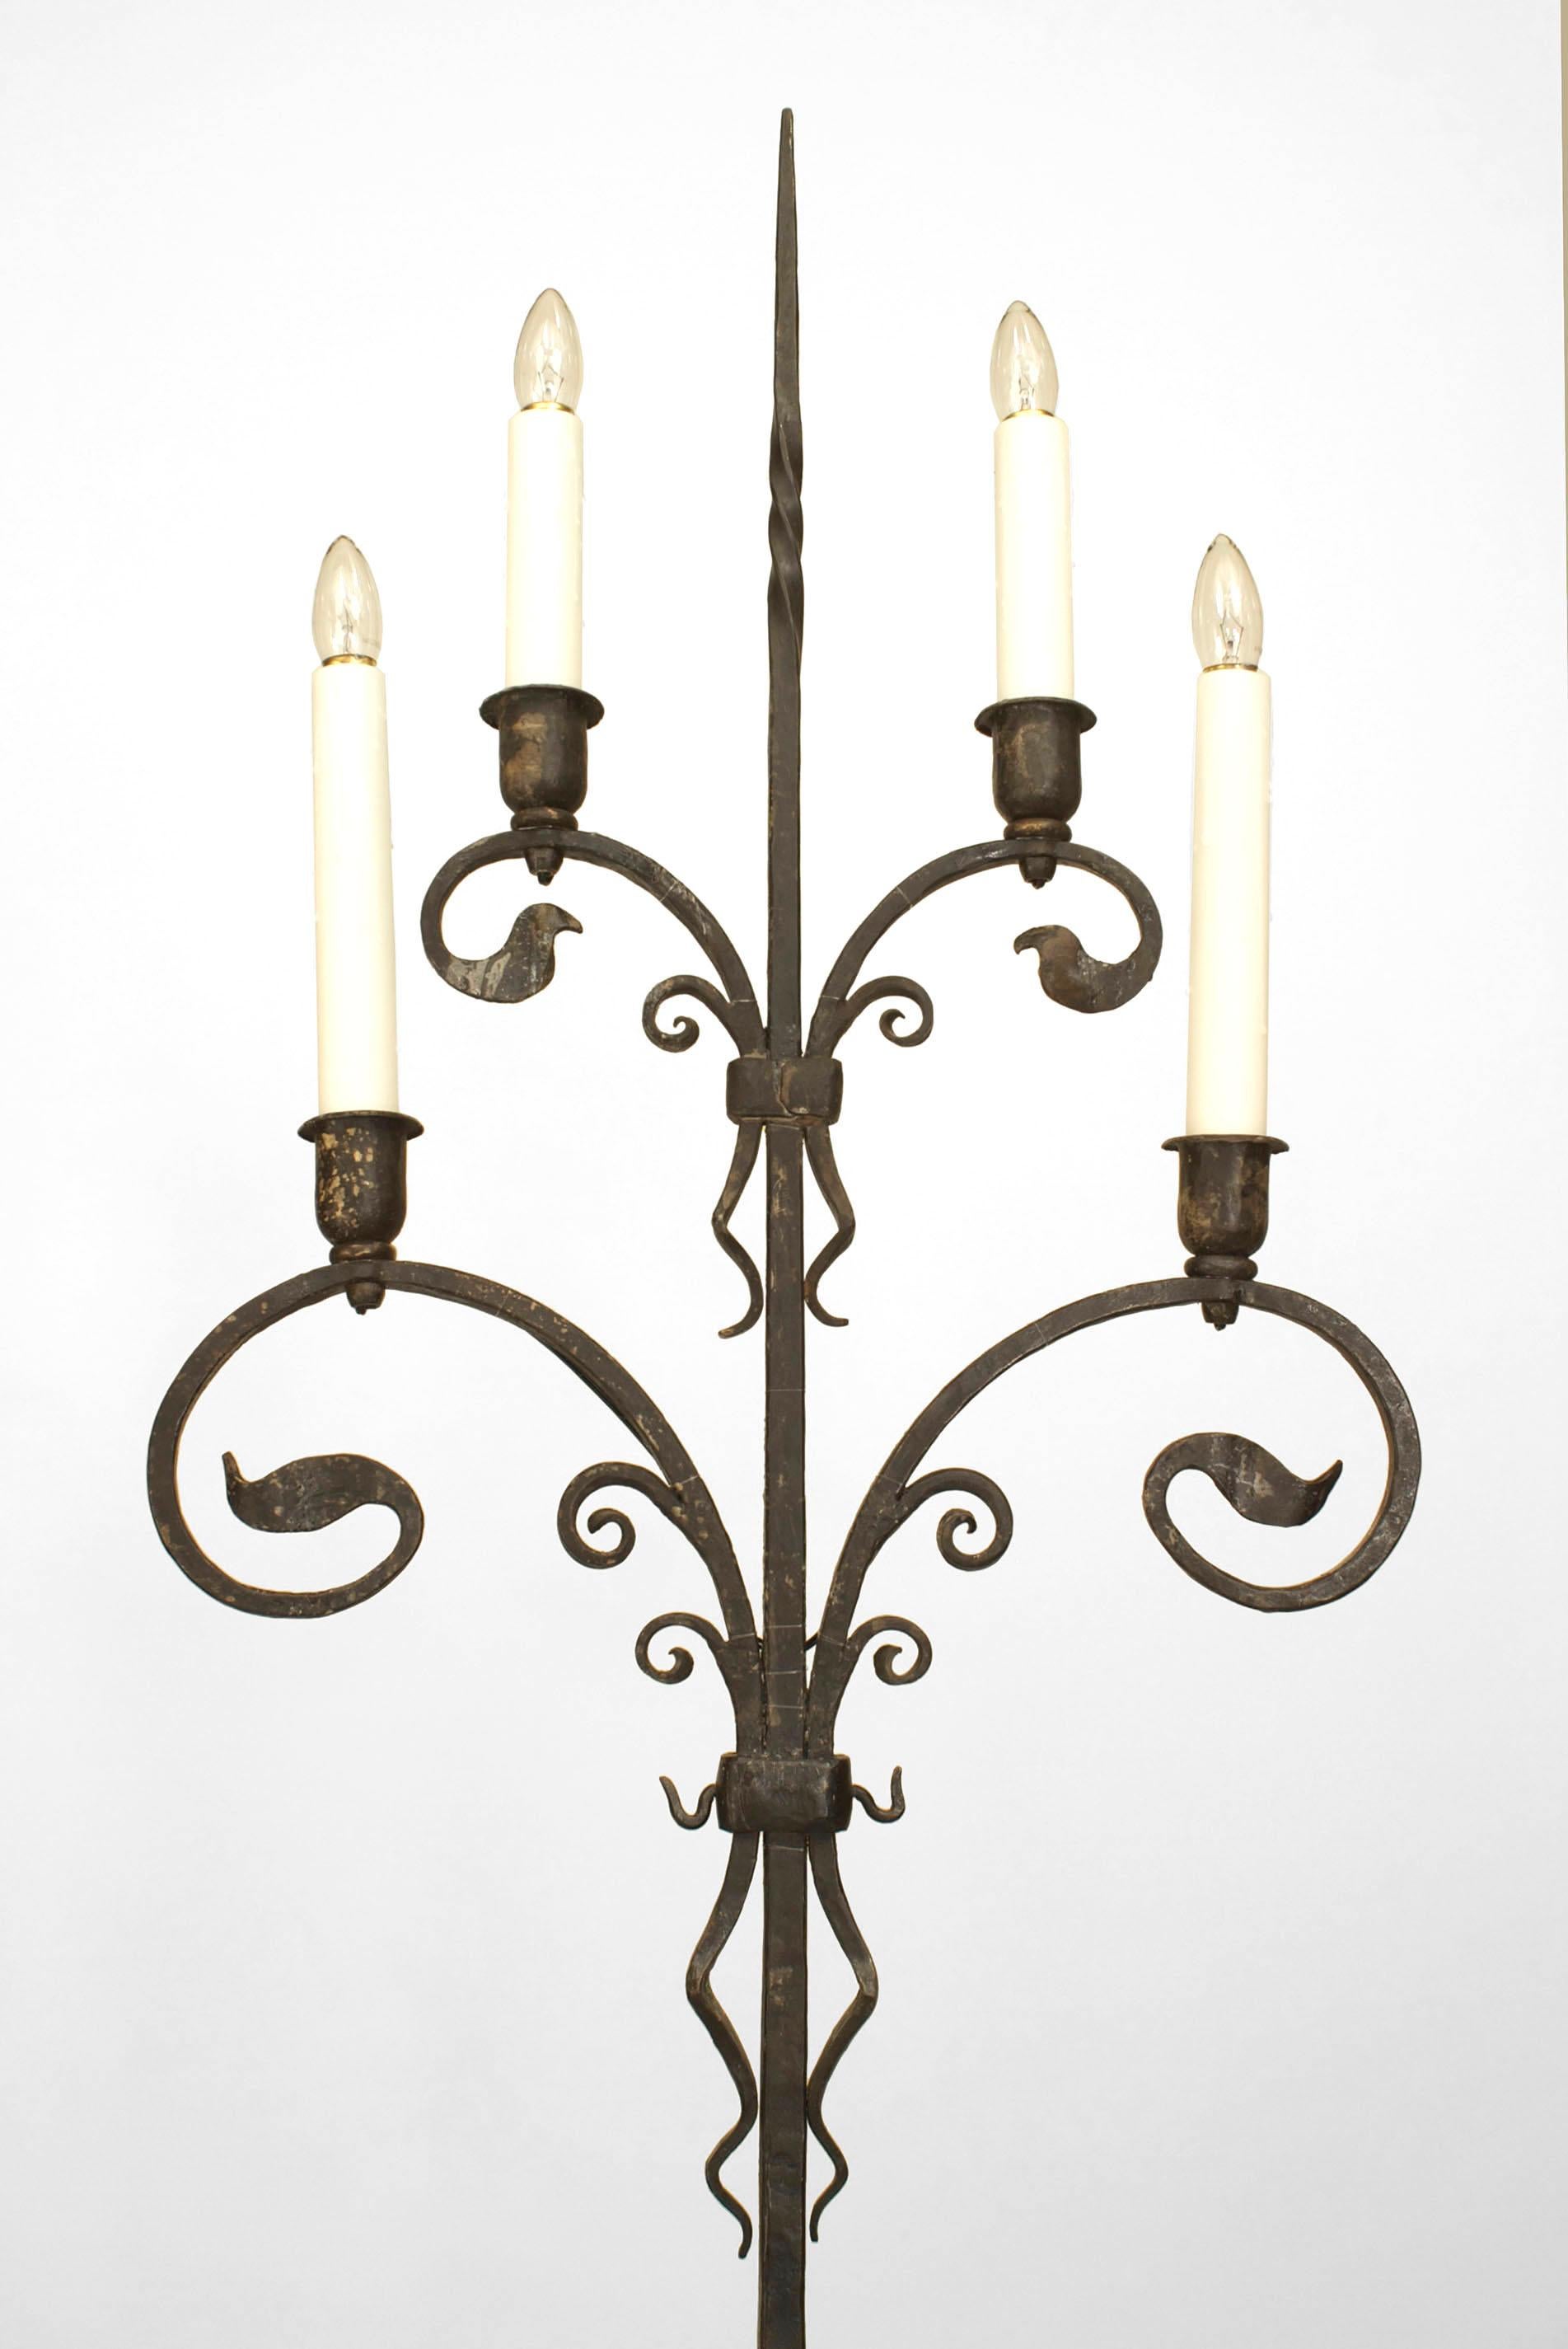 Paar amerikanischer viktorianischer (1910) schmiedeeiserner 4-Licht-Kerzenständer mit verschnörkelten, blattförmigen Armen, die auf einem Dreibeinfuß ruhen (SAMUEL YELLIN zugeschrieben) (PREIS FÜR EIN PÄRCHEN).
